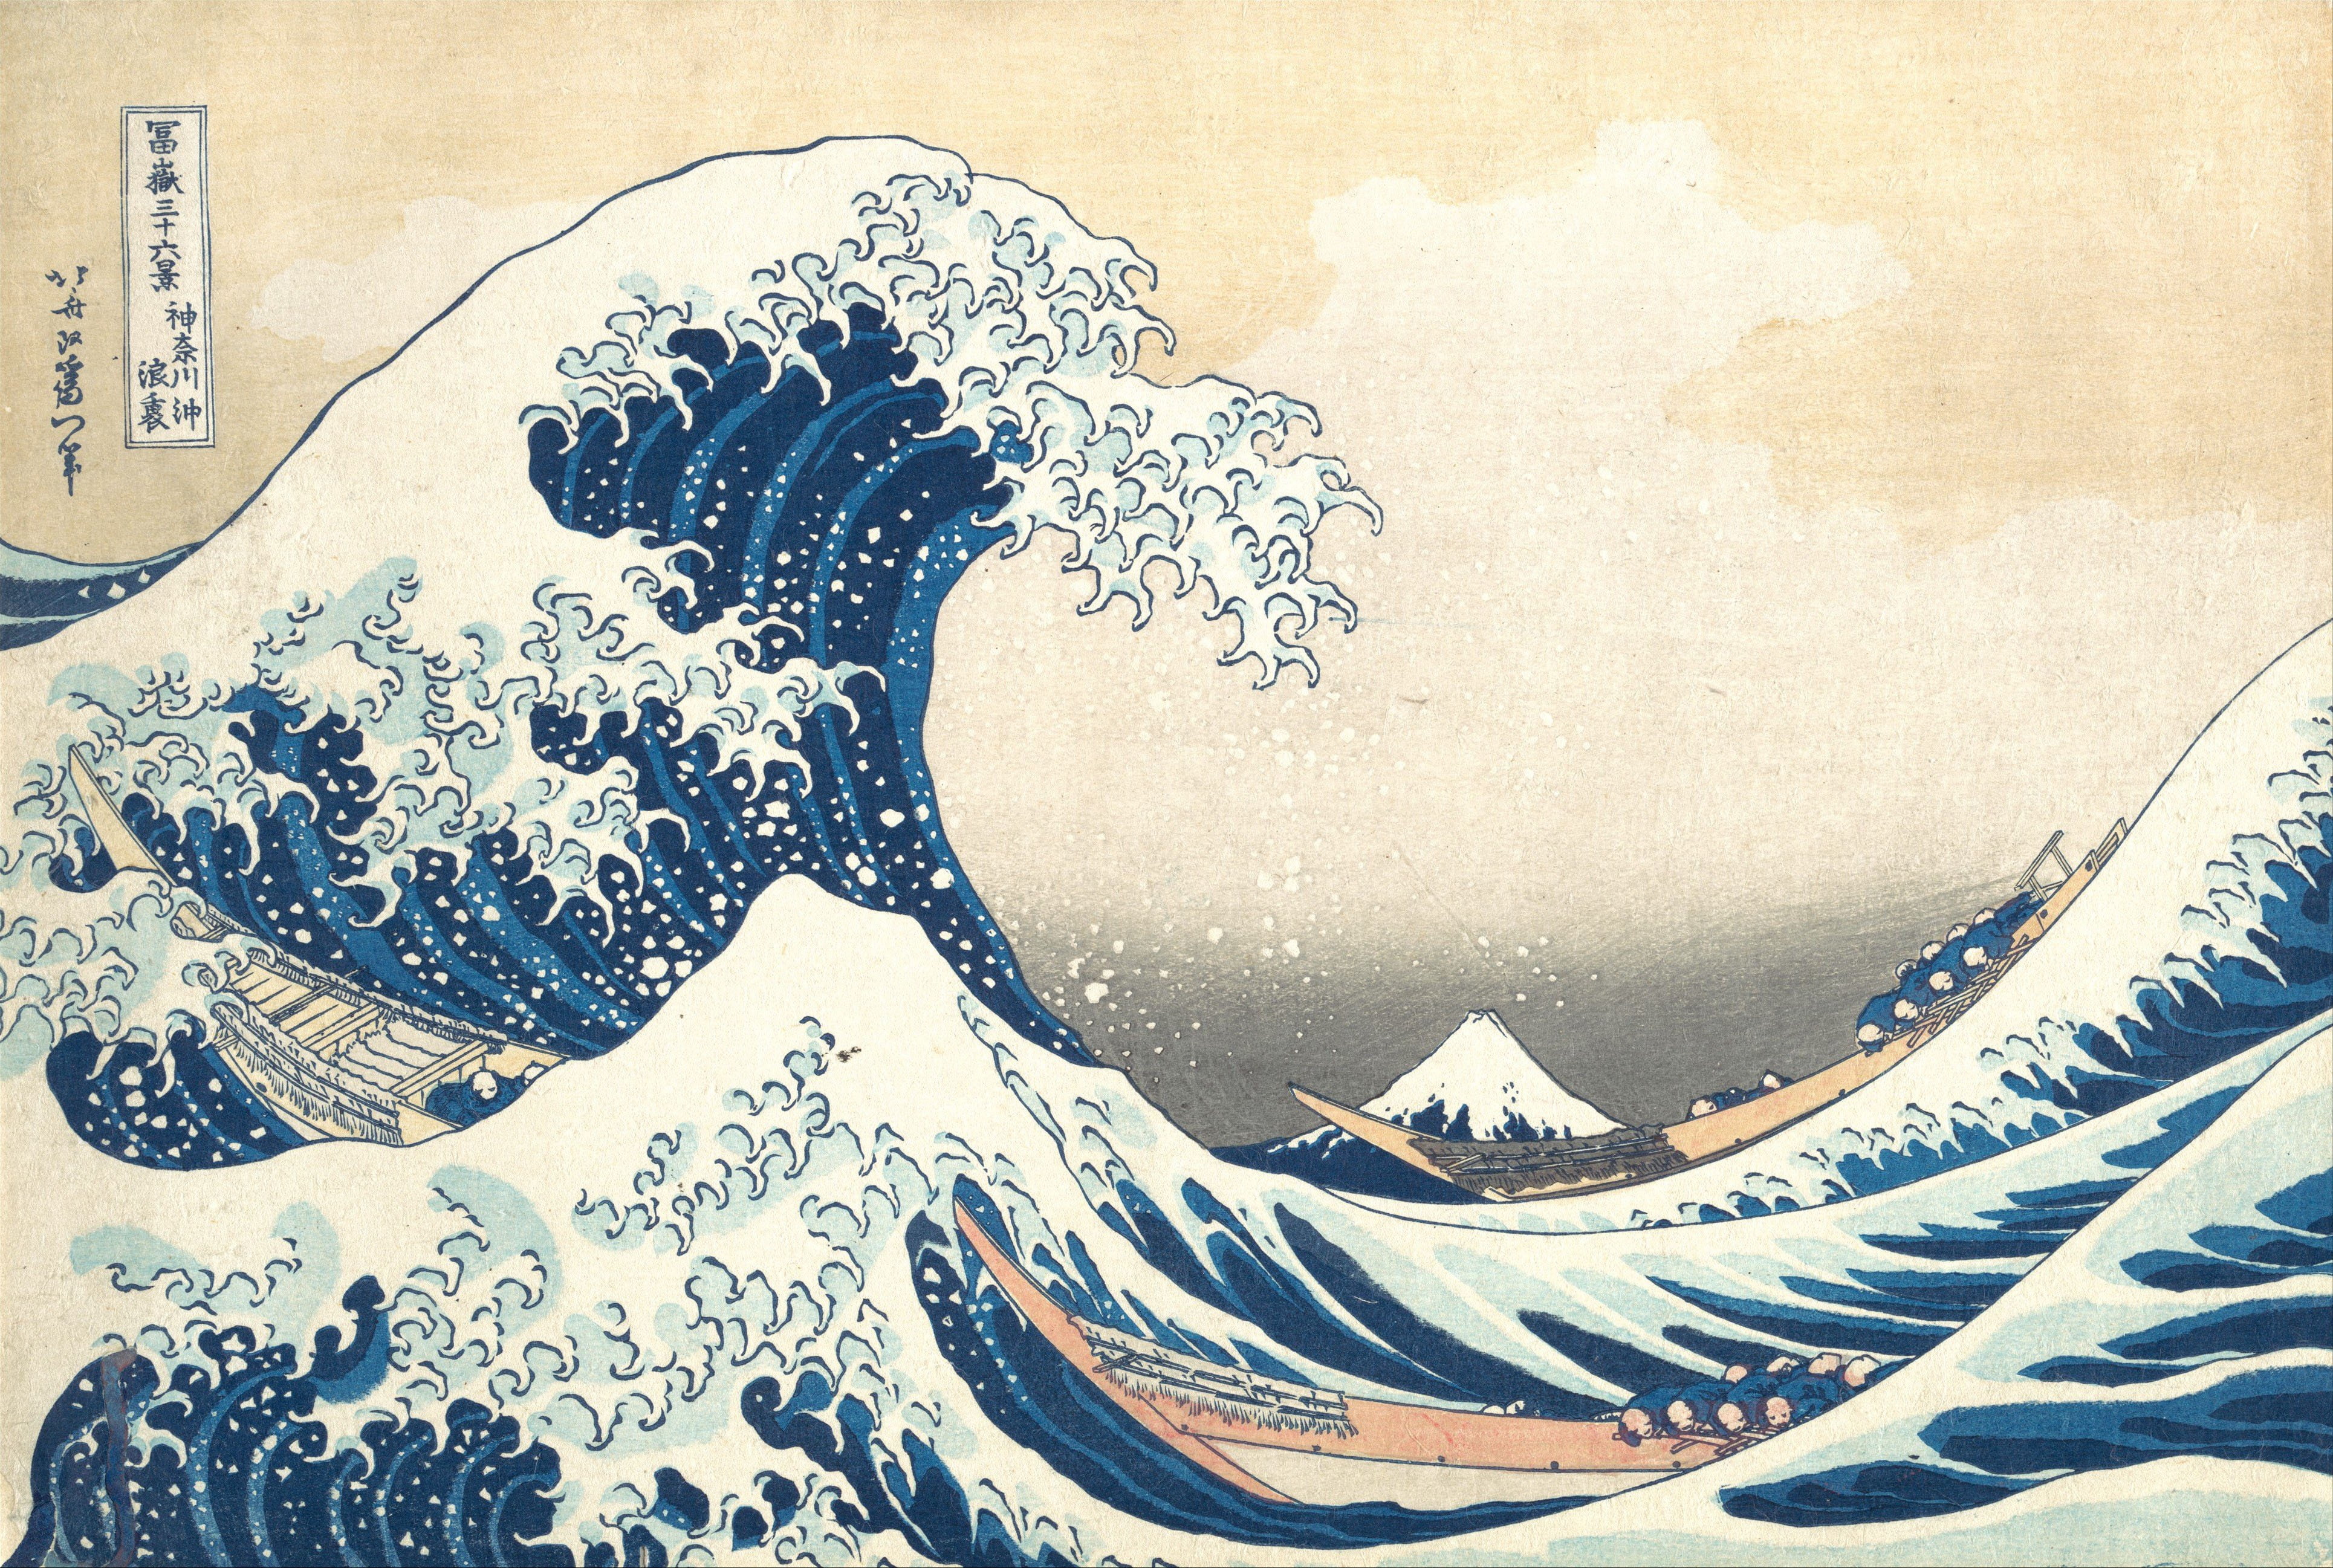 artwork, boat, Japan, painting, sea, The Great Wave Off Kanagawa